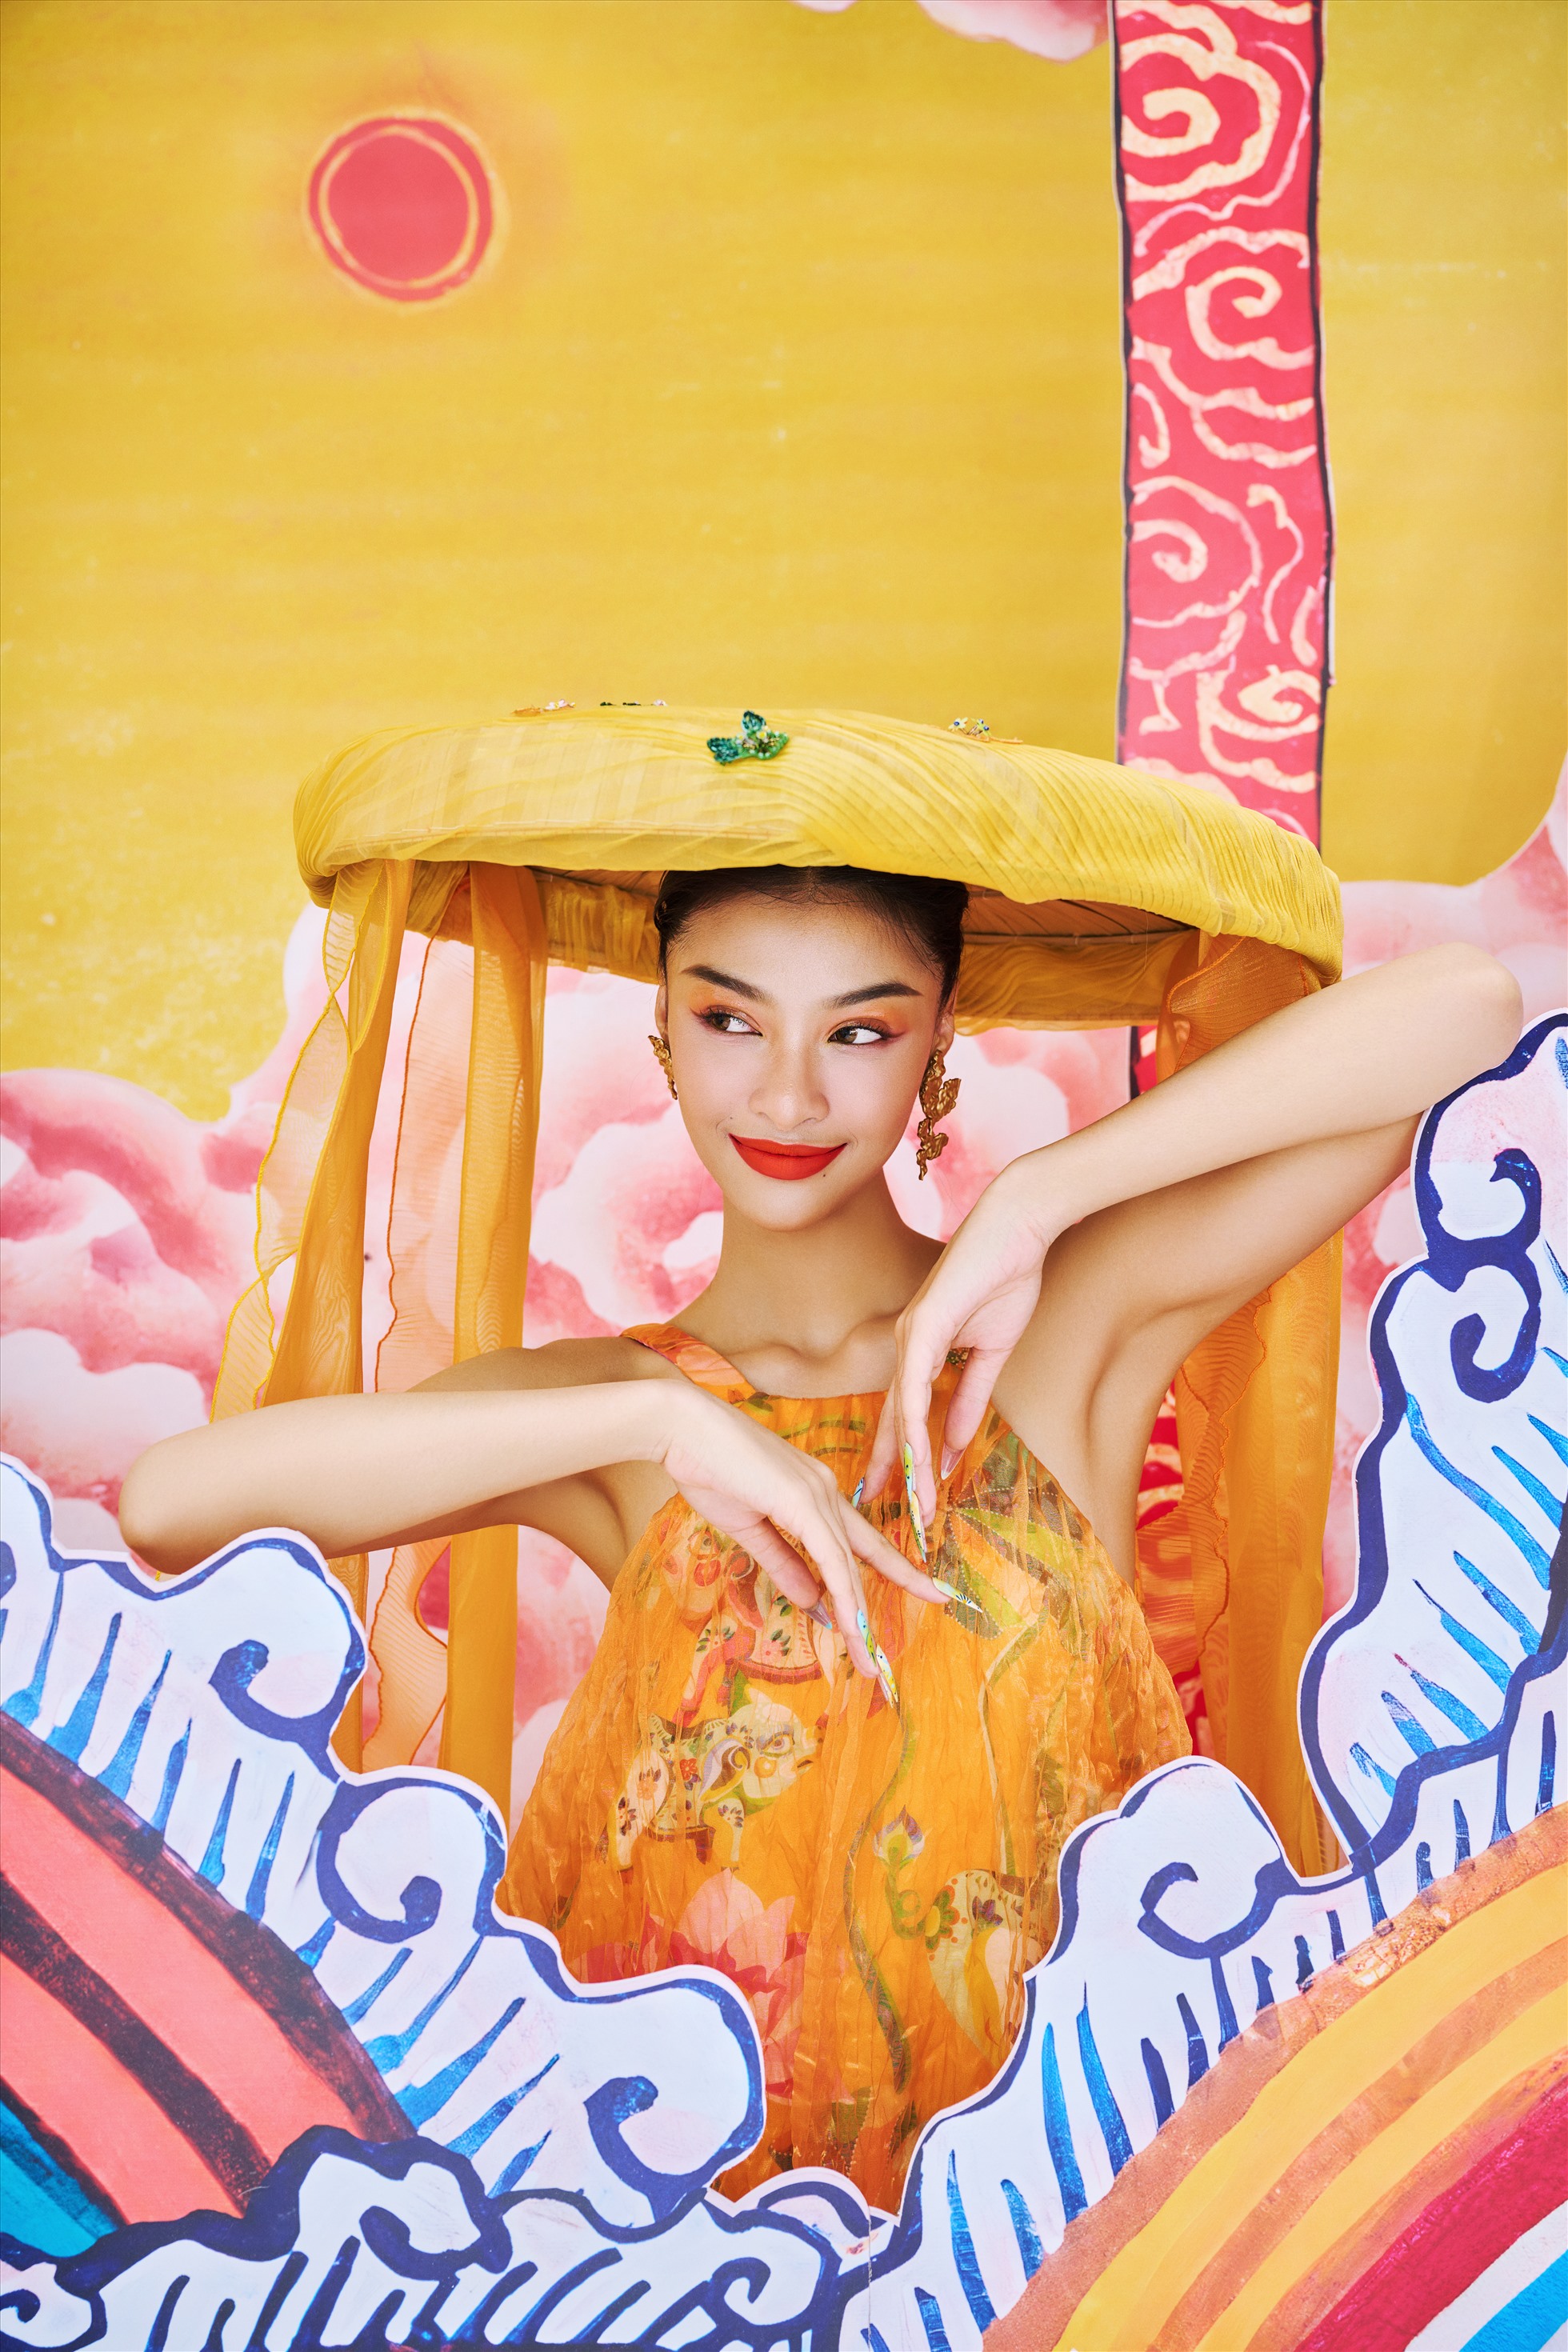 Là một trong 3 cô gái được Miss World Vietnam 2019 lựa chọn bởi vẻ đẹp chuẩn quốc tế nhưng vẫn toát lên vẻ đẹp của người con gái Việt.